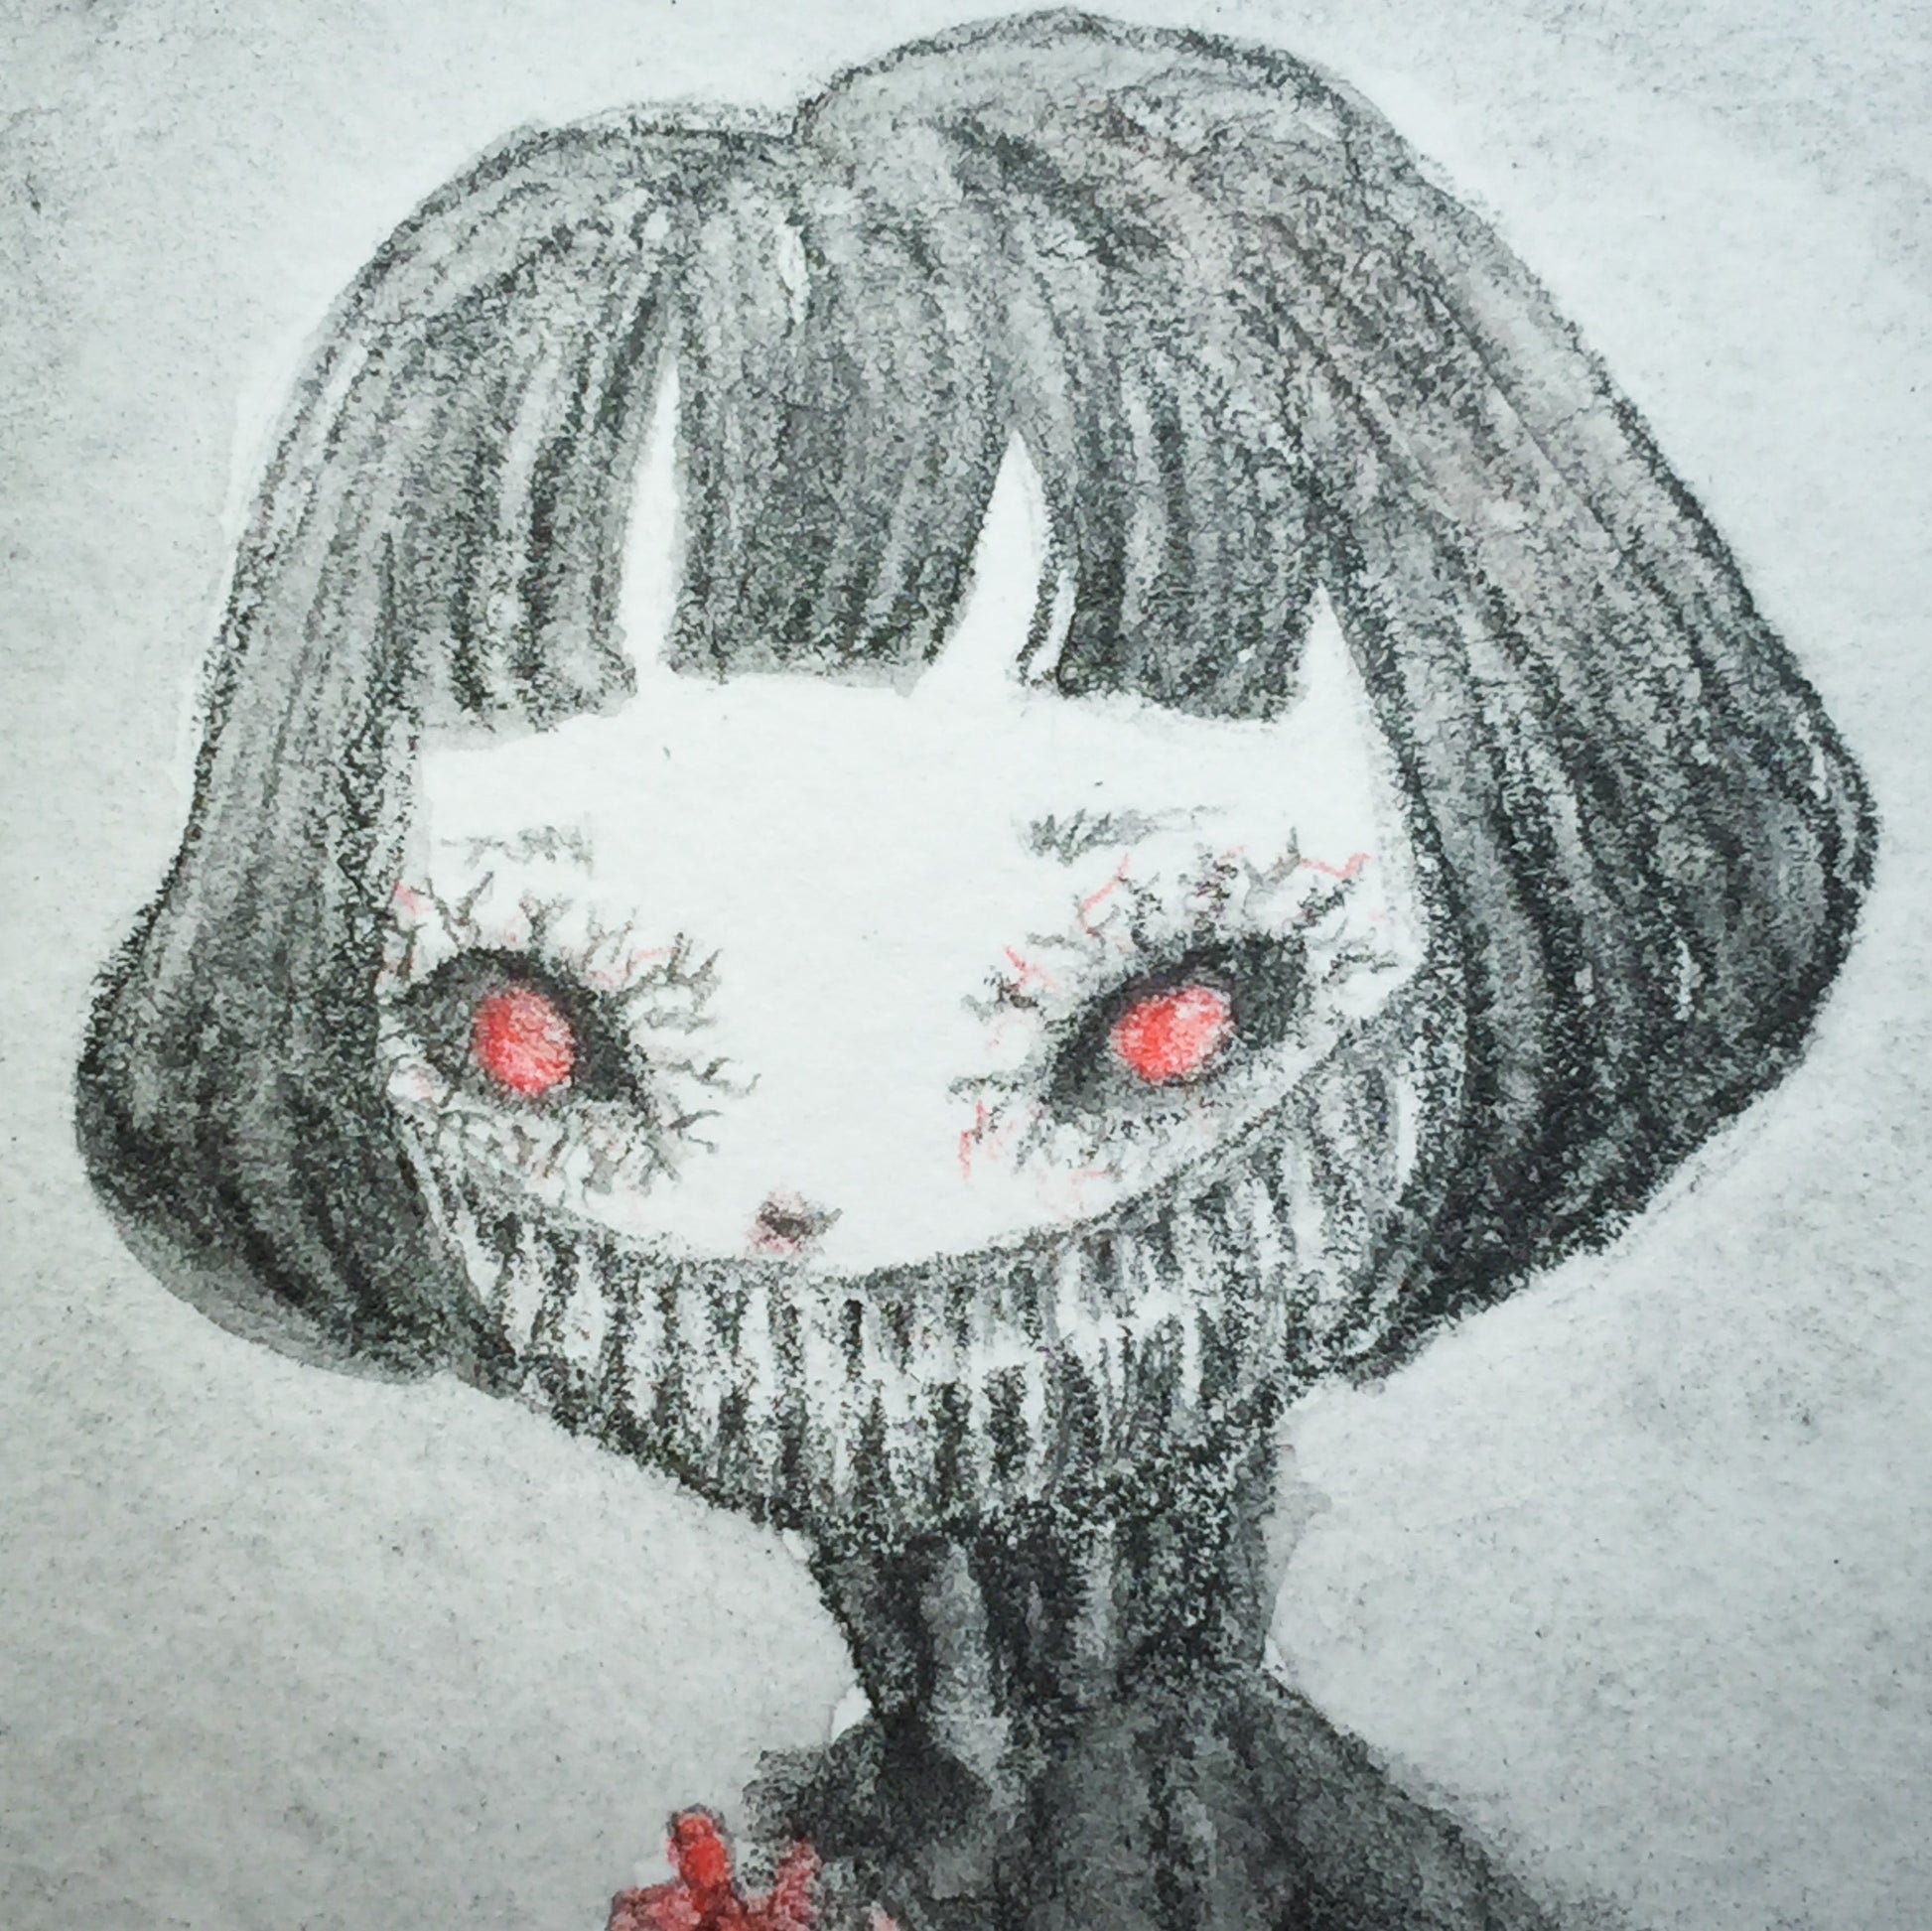 Darknita Danita Monster Creature Ghoul Watercolor Graphite Pencil Drawing ACEO Card Original Halloween Illustration Heart Eat